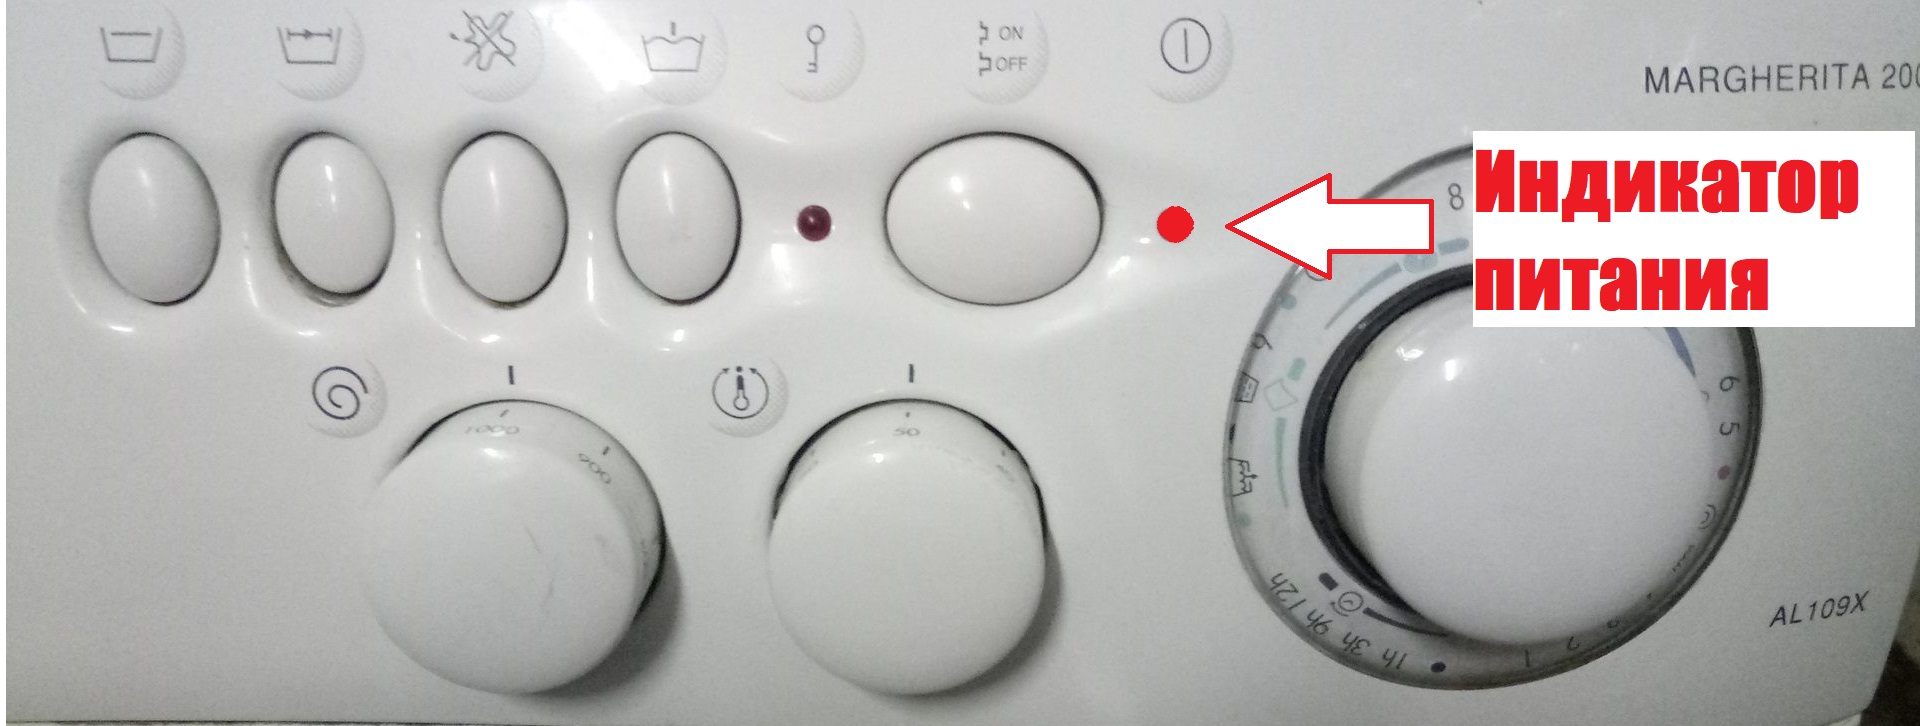 Как определить код ошибки в стиральных машинах типа Ariston Margherita